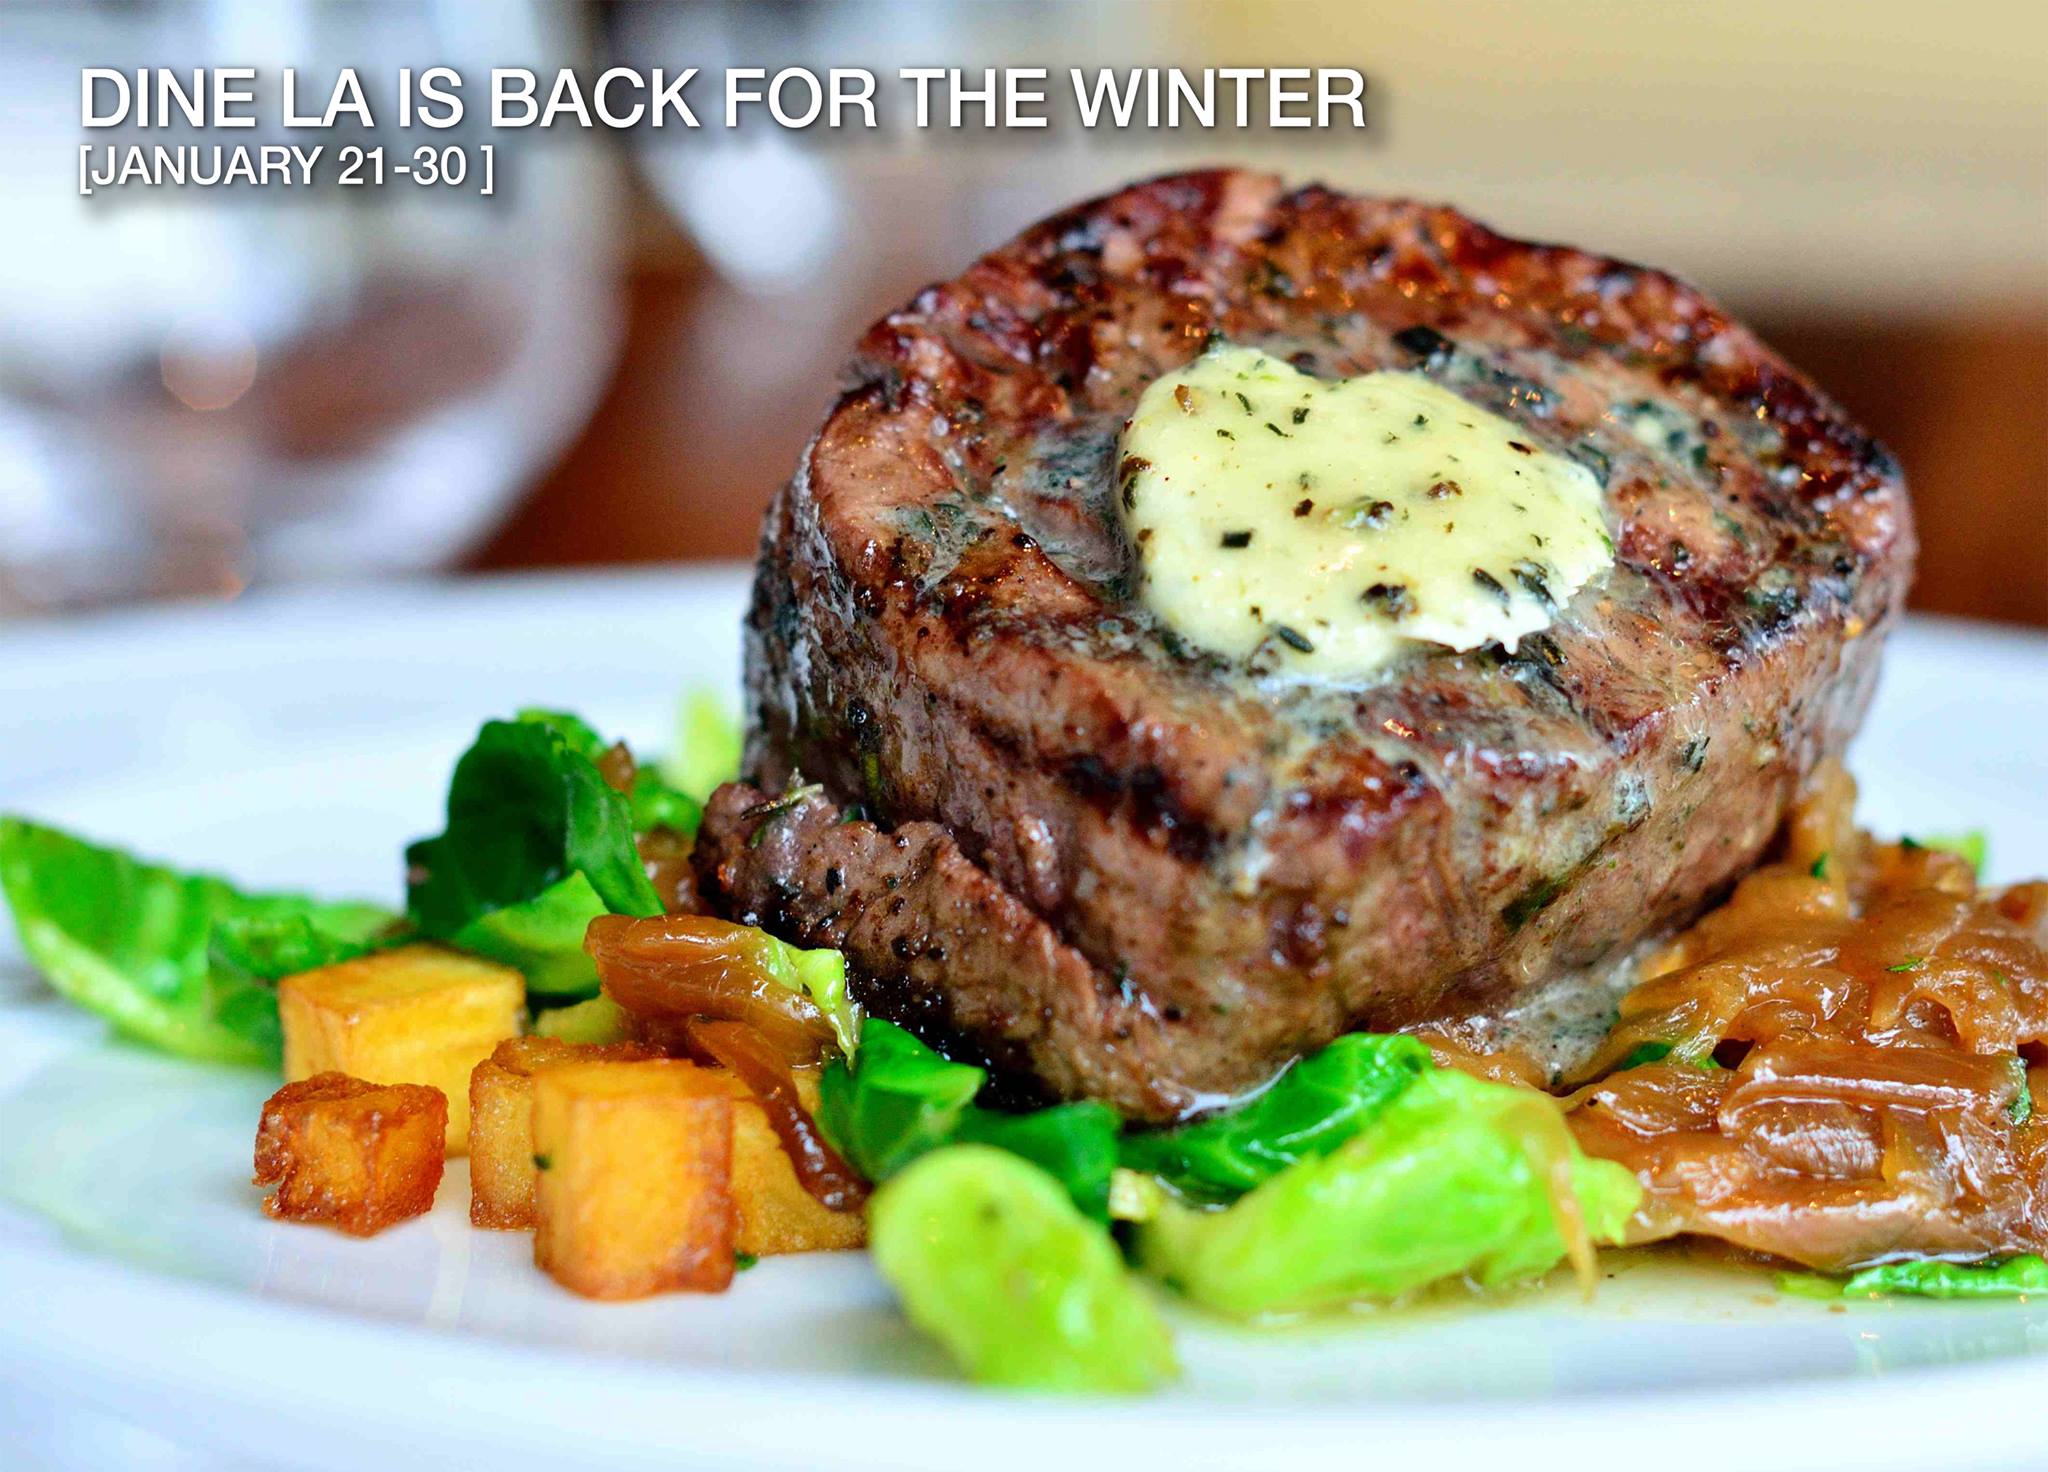 Forks Up! DineLA Restaurant Week Returns Jan. 20-31